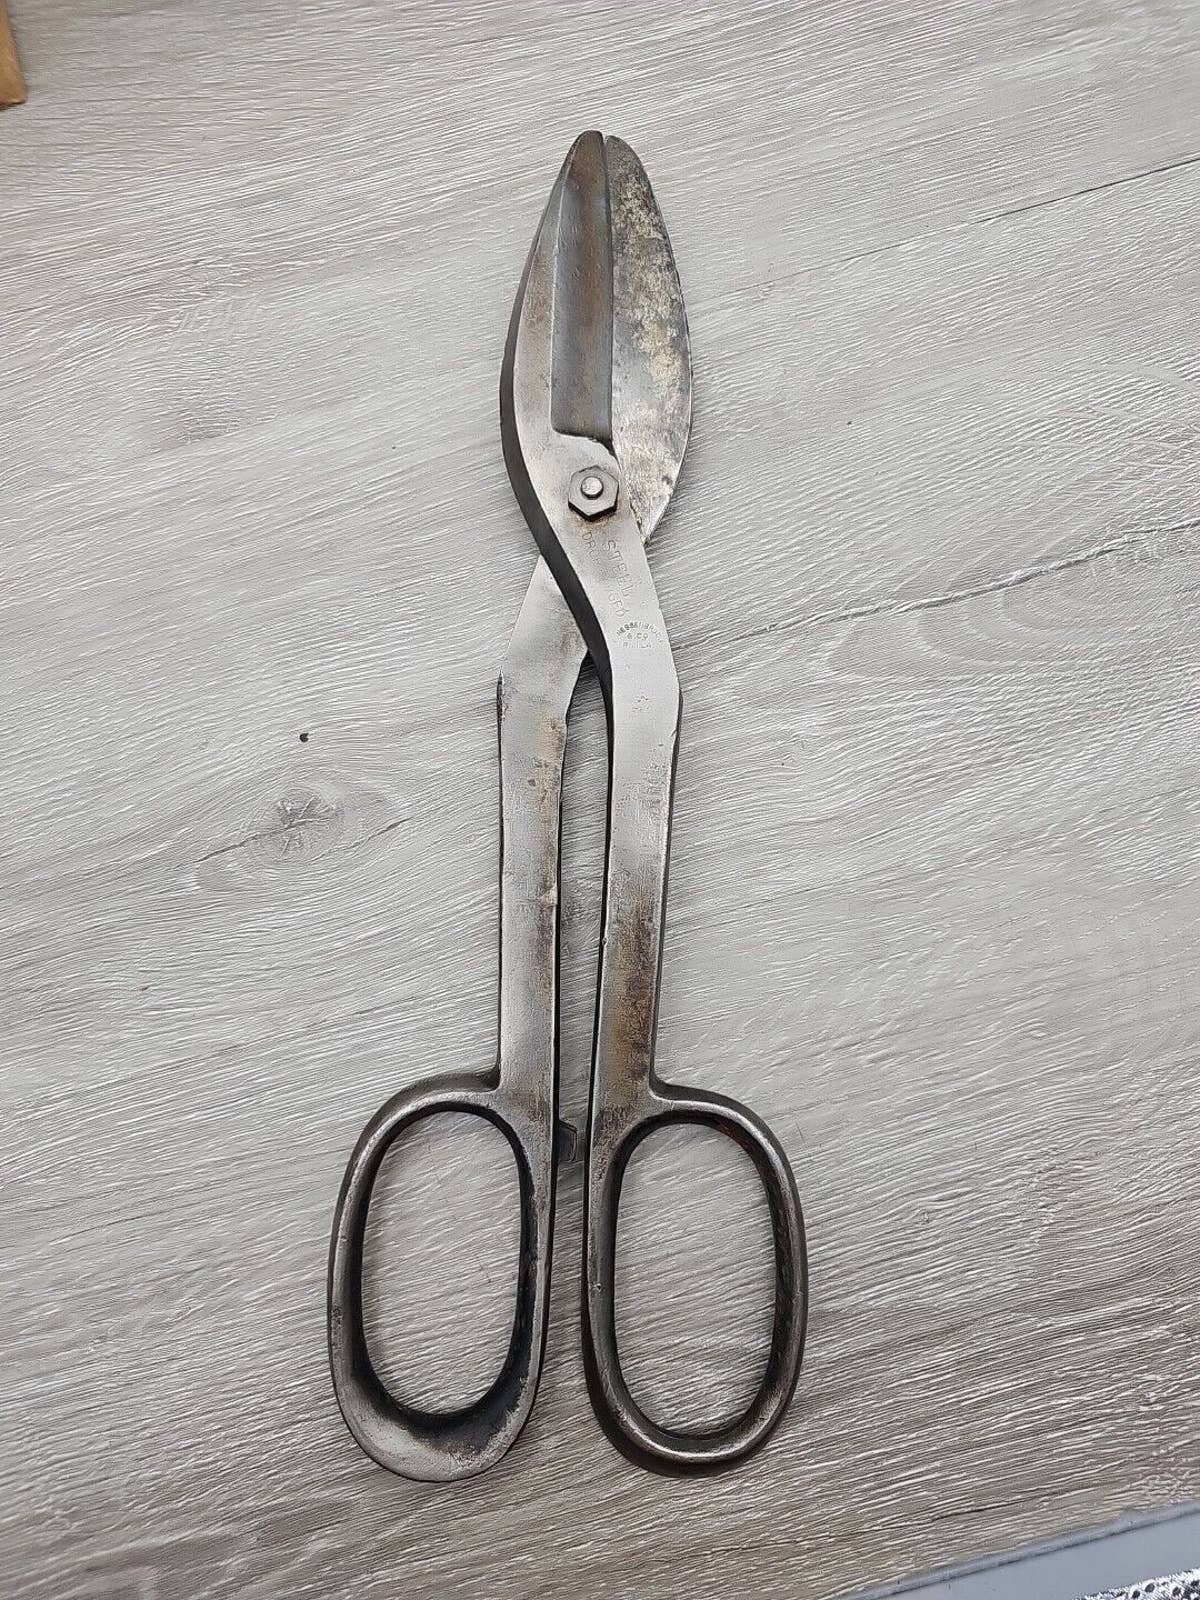 Metal Cutting Scissors - Crescent Tool Co. - No T412